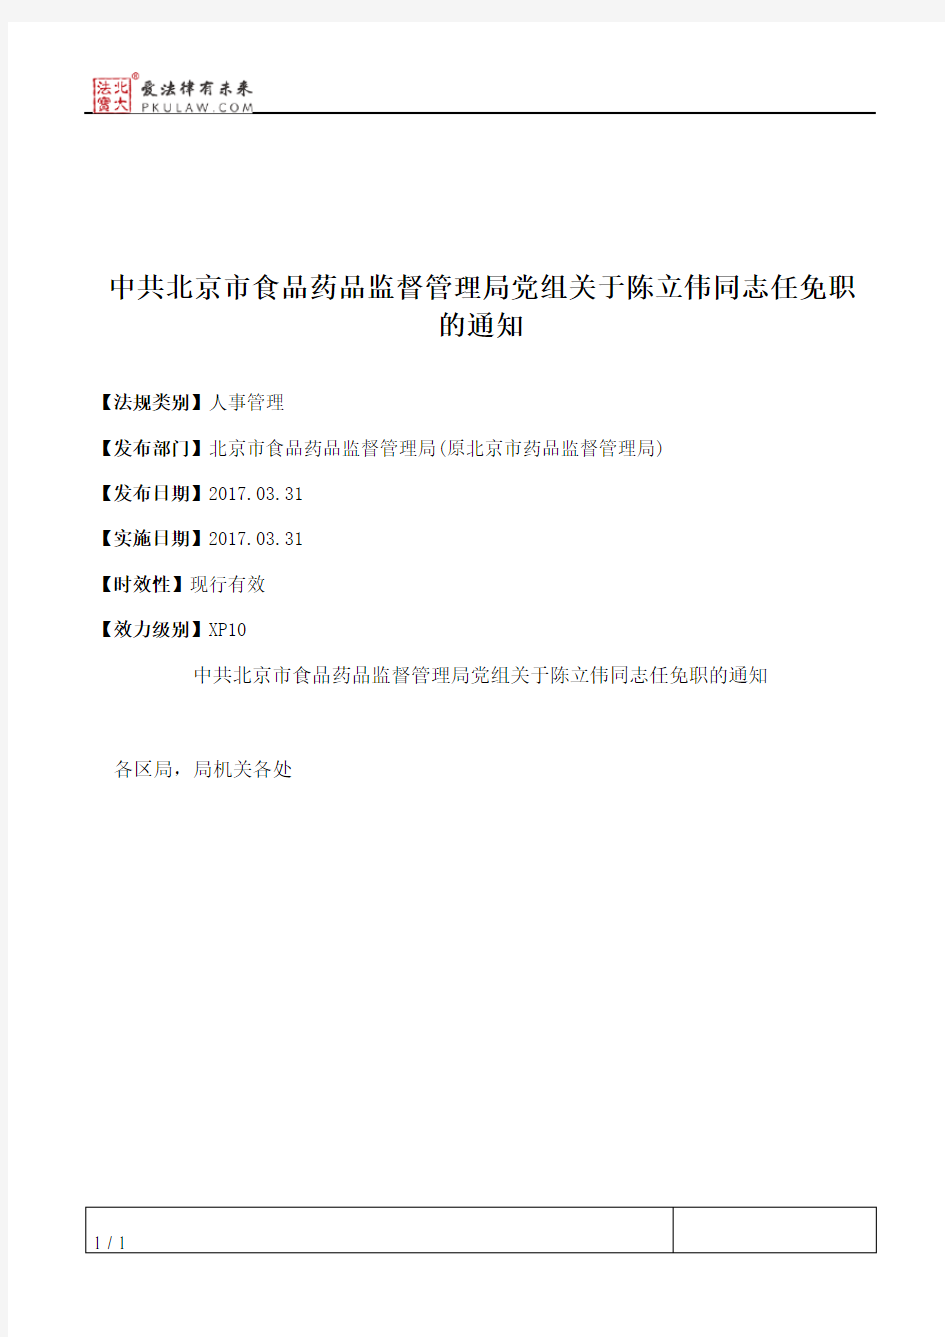 中共北京市食品药品监督管理局党组关于陈立伟同志任免职的通知